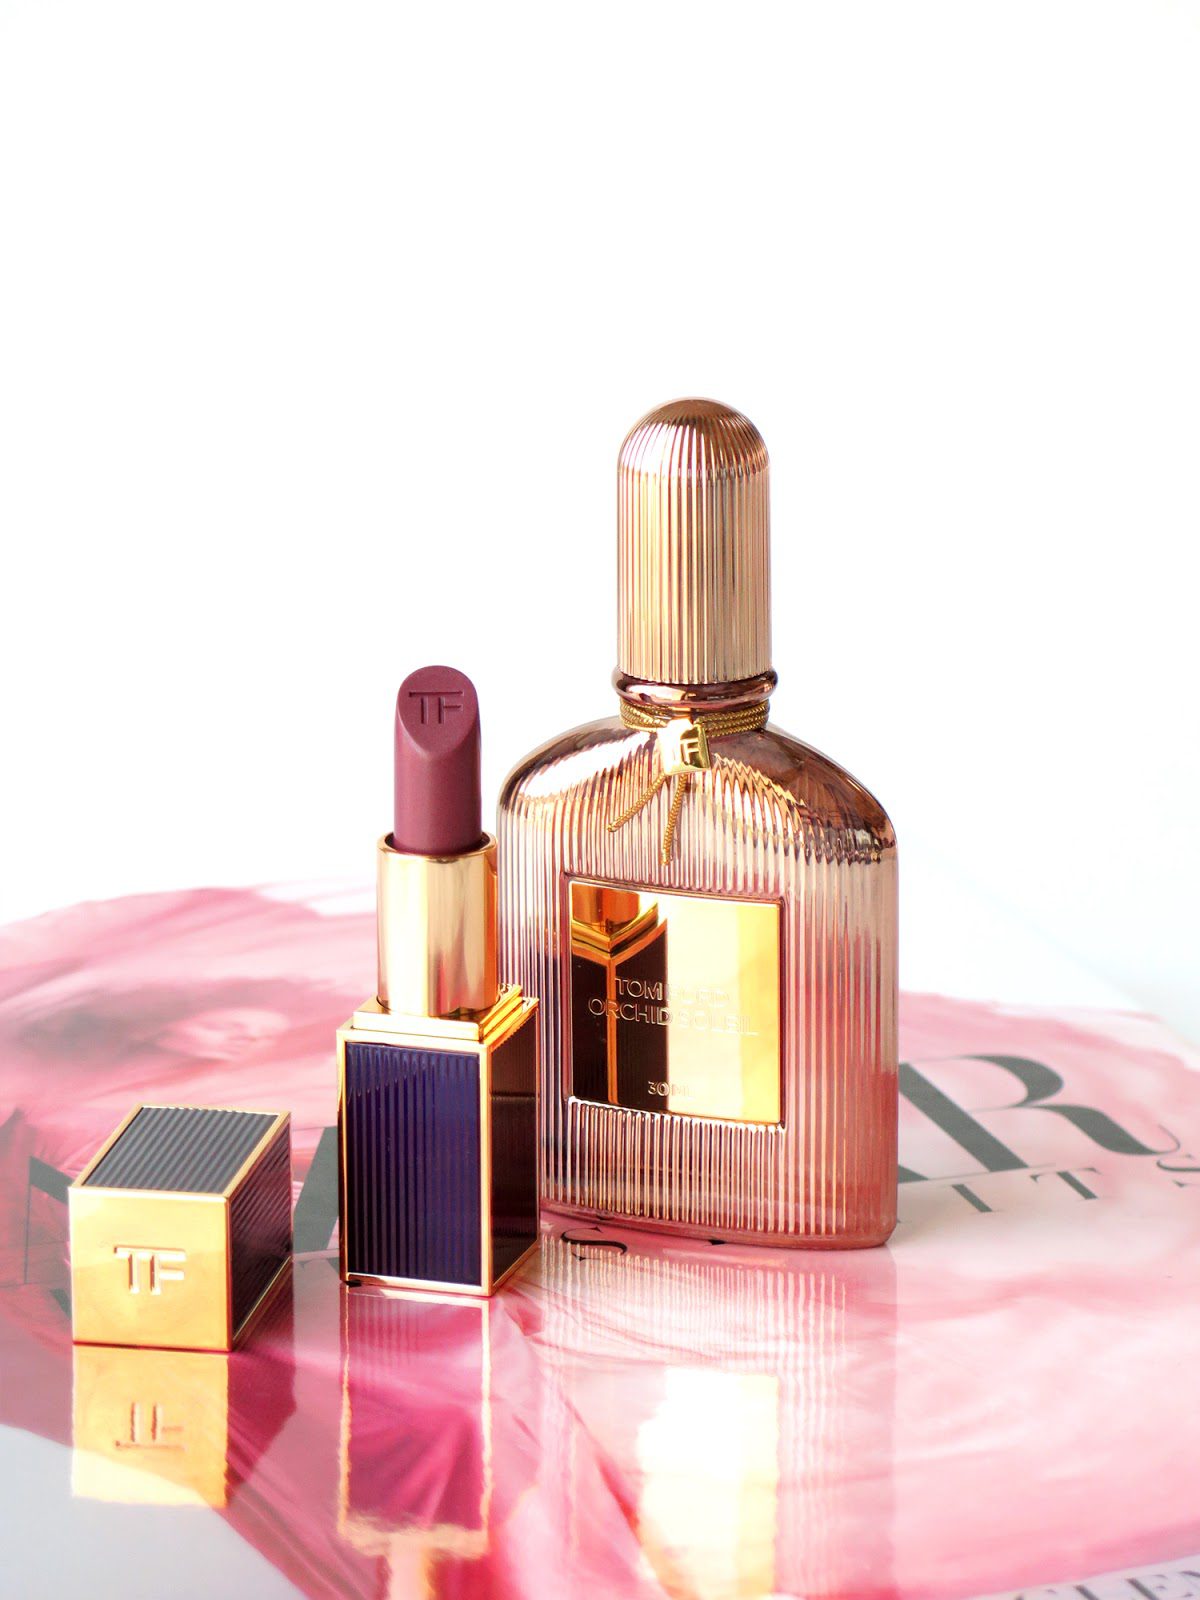 NEW Louis Vuitton MATIERE NOIRE 0.34OZ 10ml Perfume Travel Sample Miniature  Size